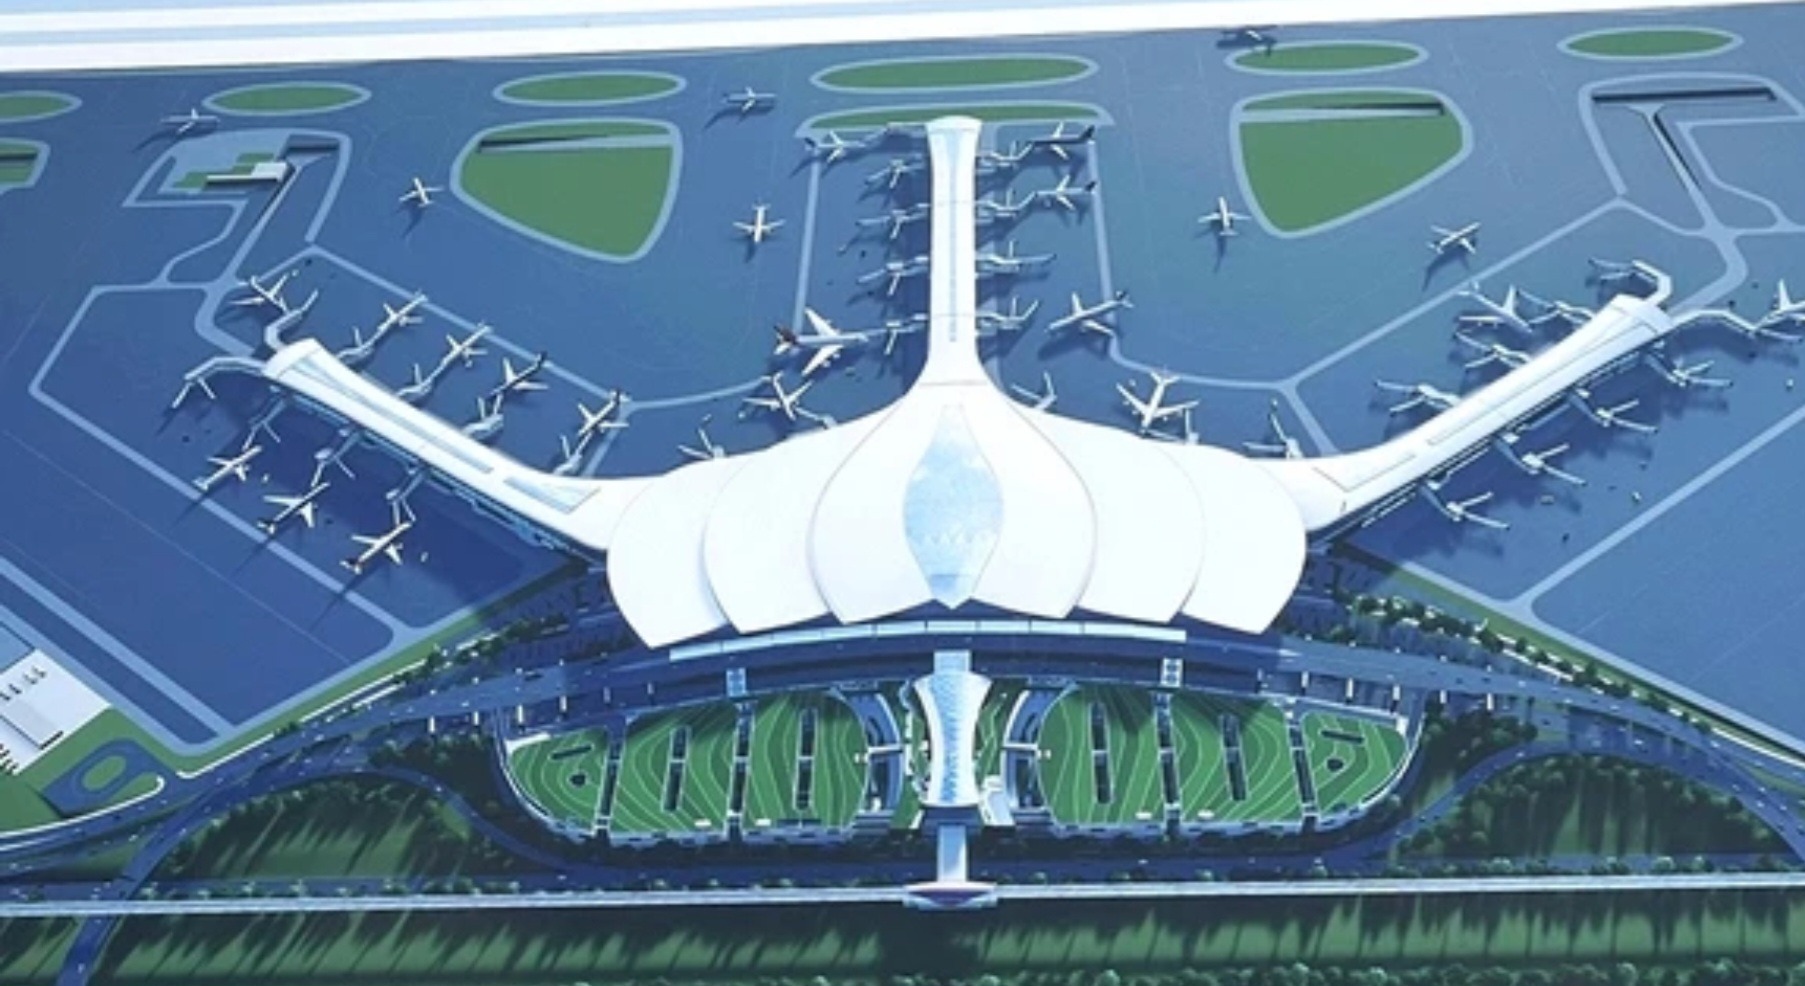 Báo quốc tế viết gì về sân bay Long Thành gần 20 tỉ USD?